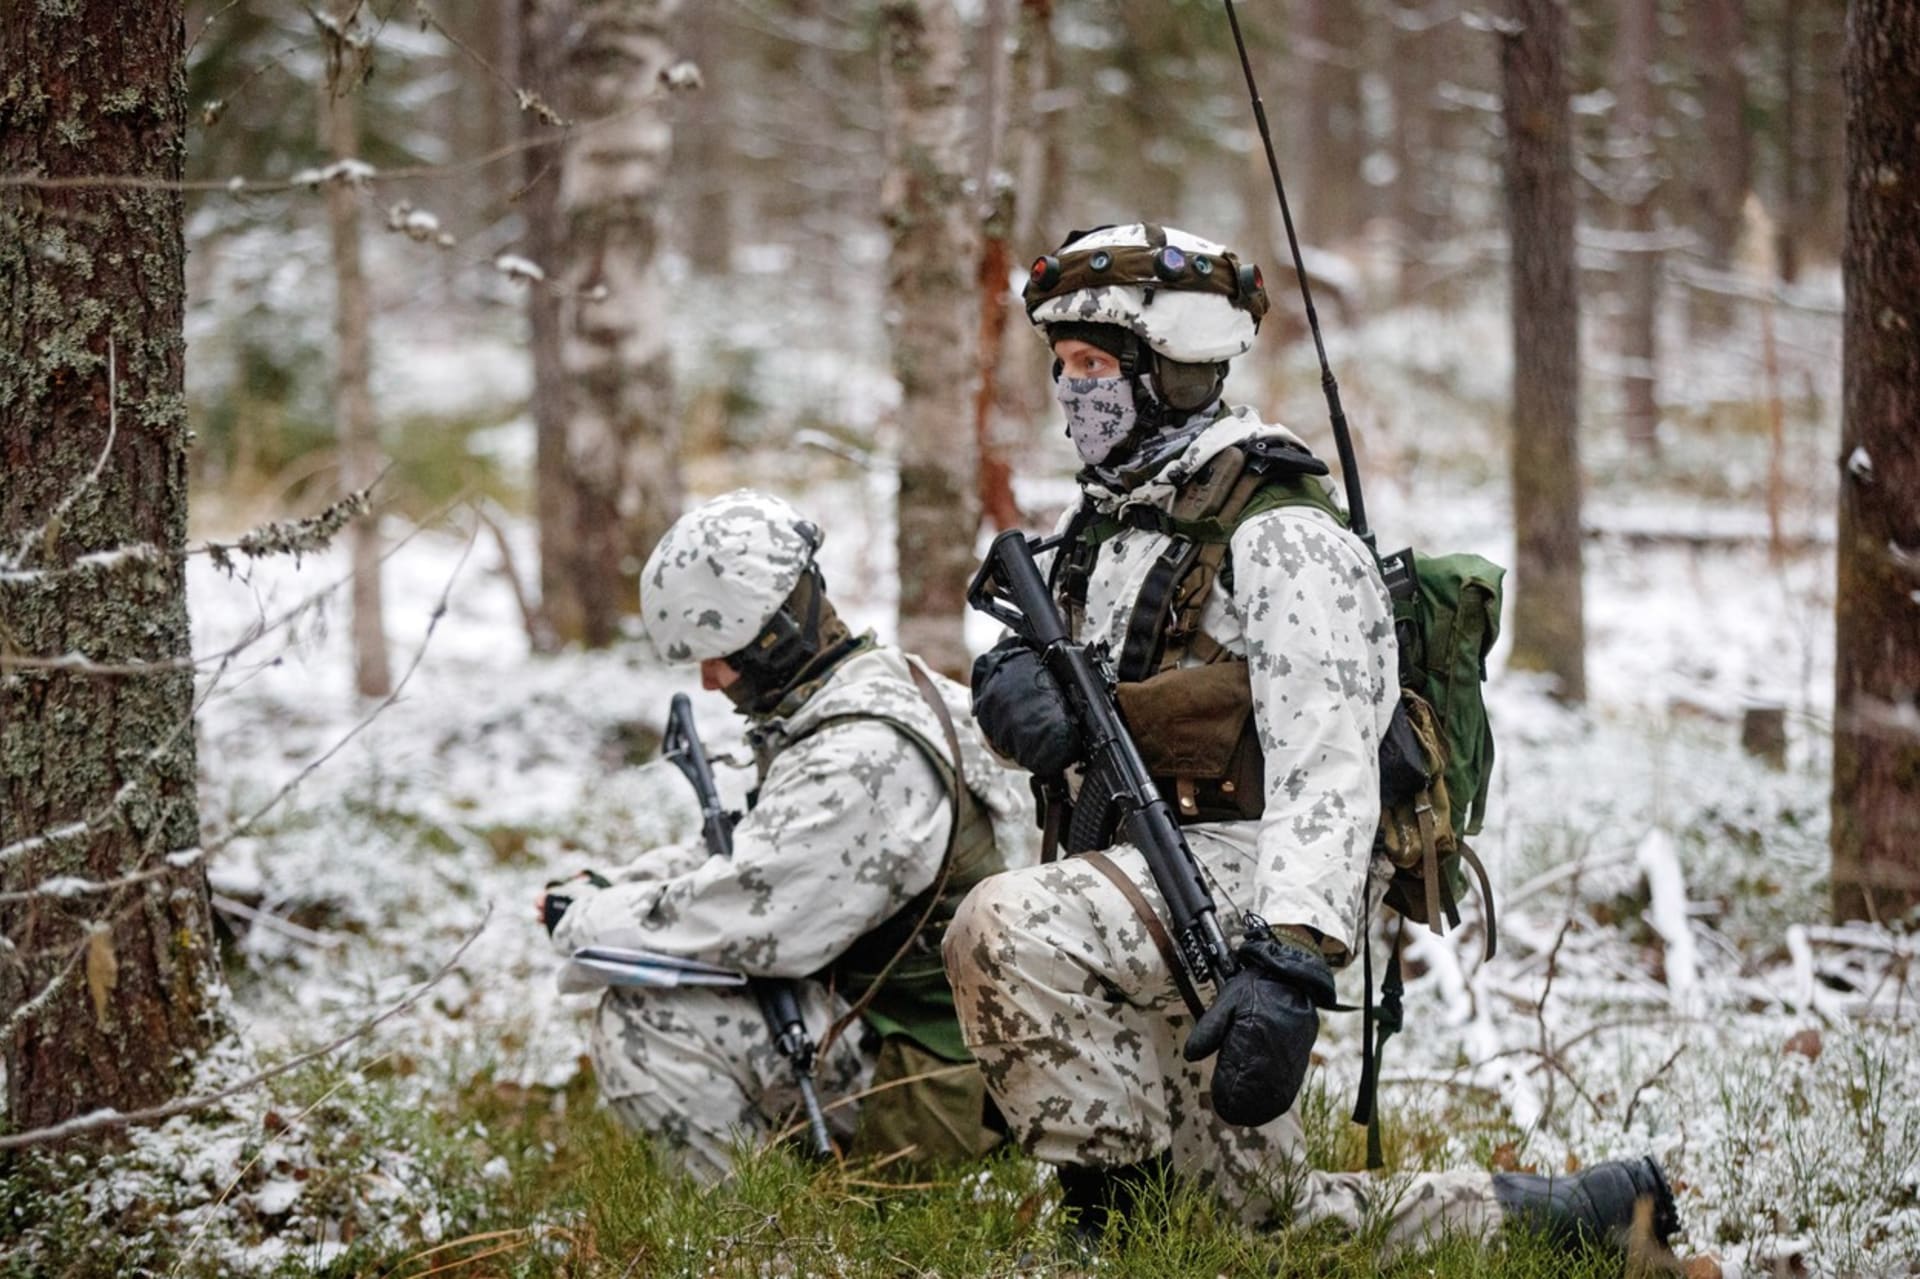 Vojáci finské armády